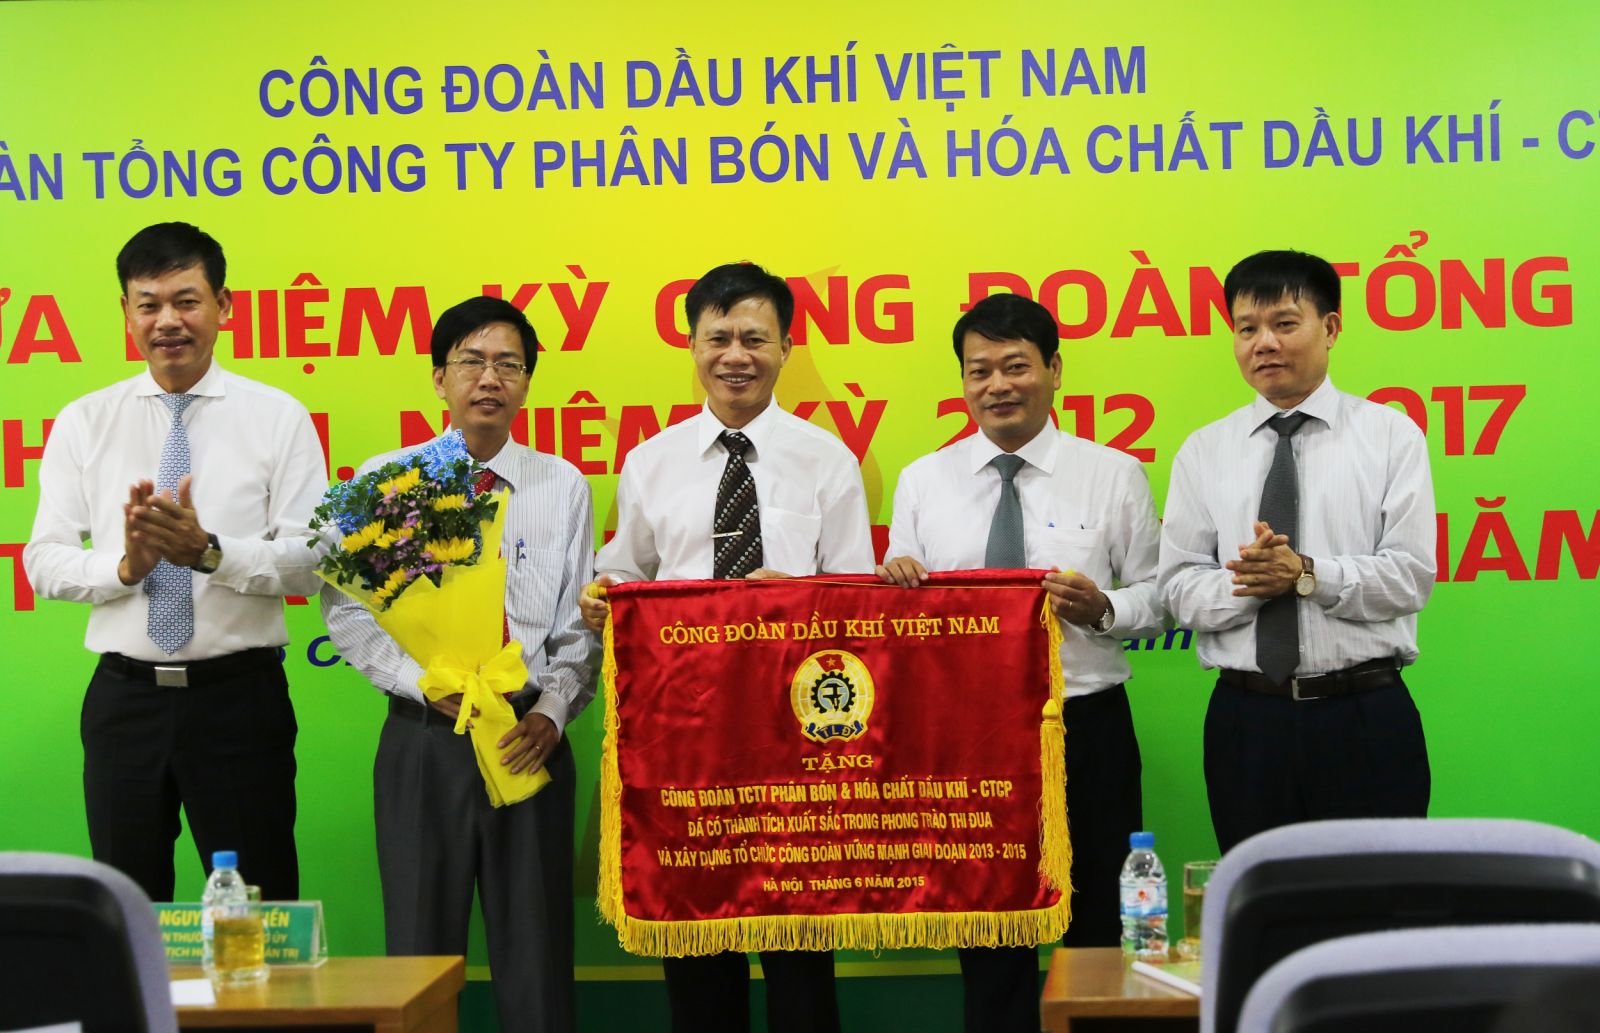 Nhận cờ thi đua của Công đoàn Dầu khí Việt Nam